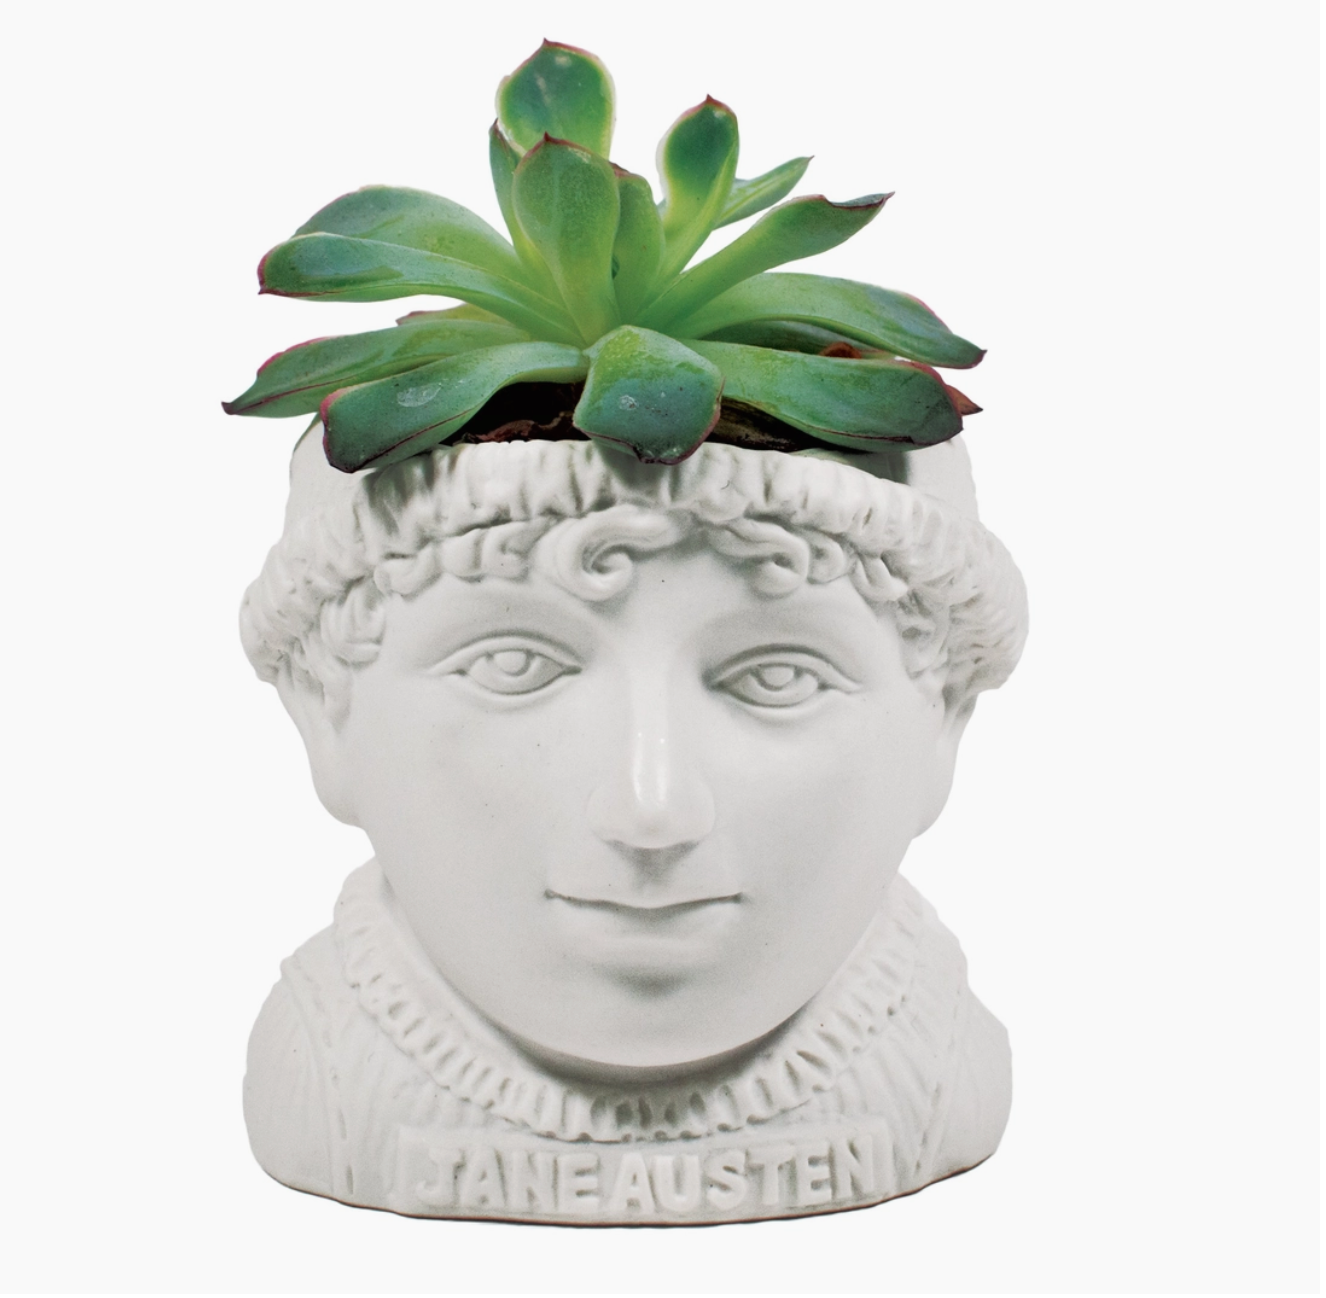 Jane Austen Planter